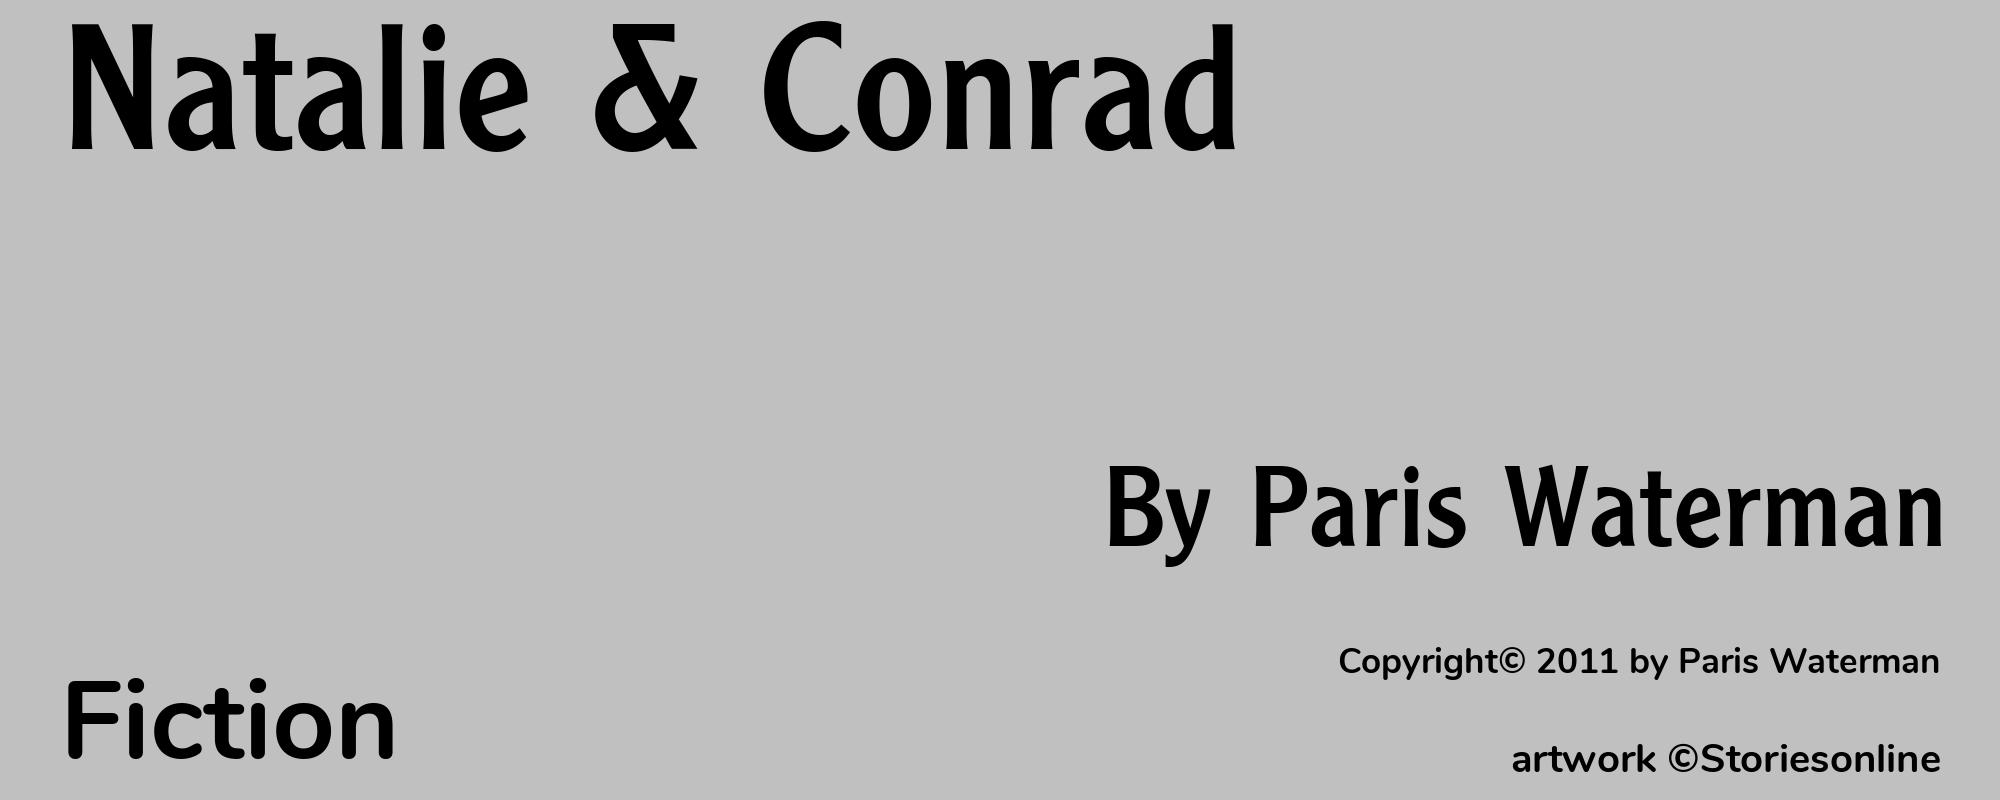 Natalie & Conrad - Cover